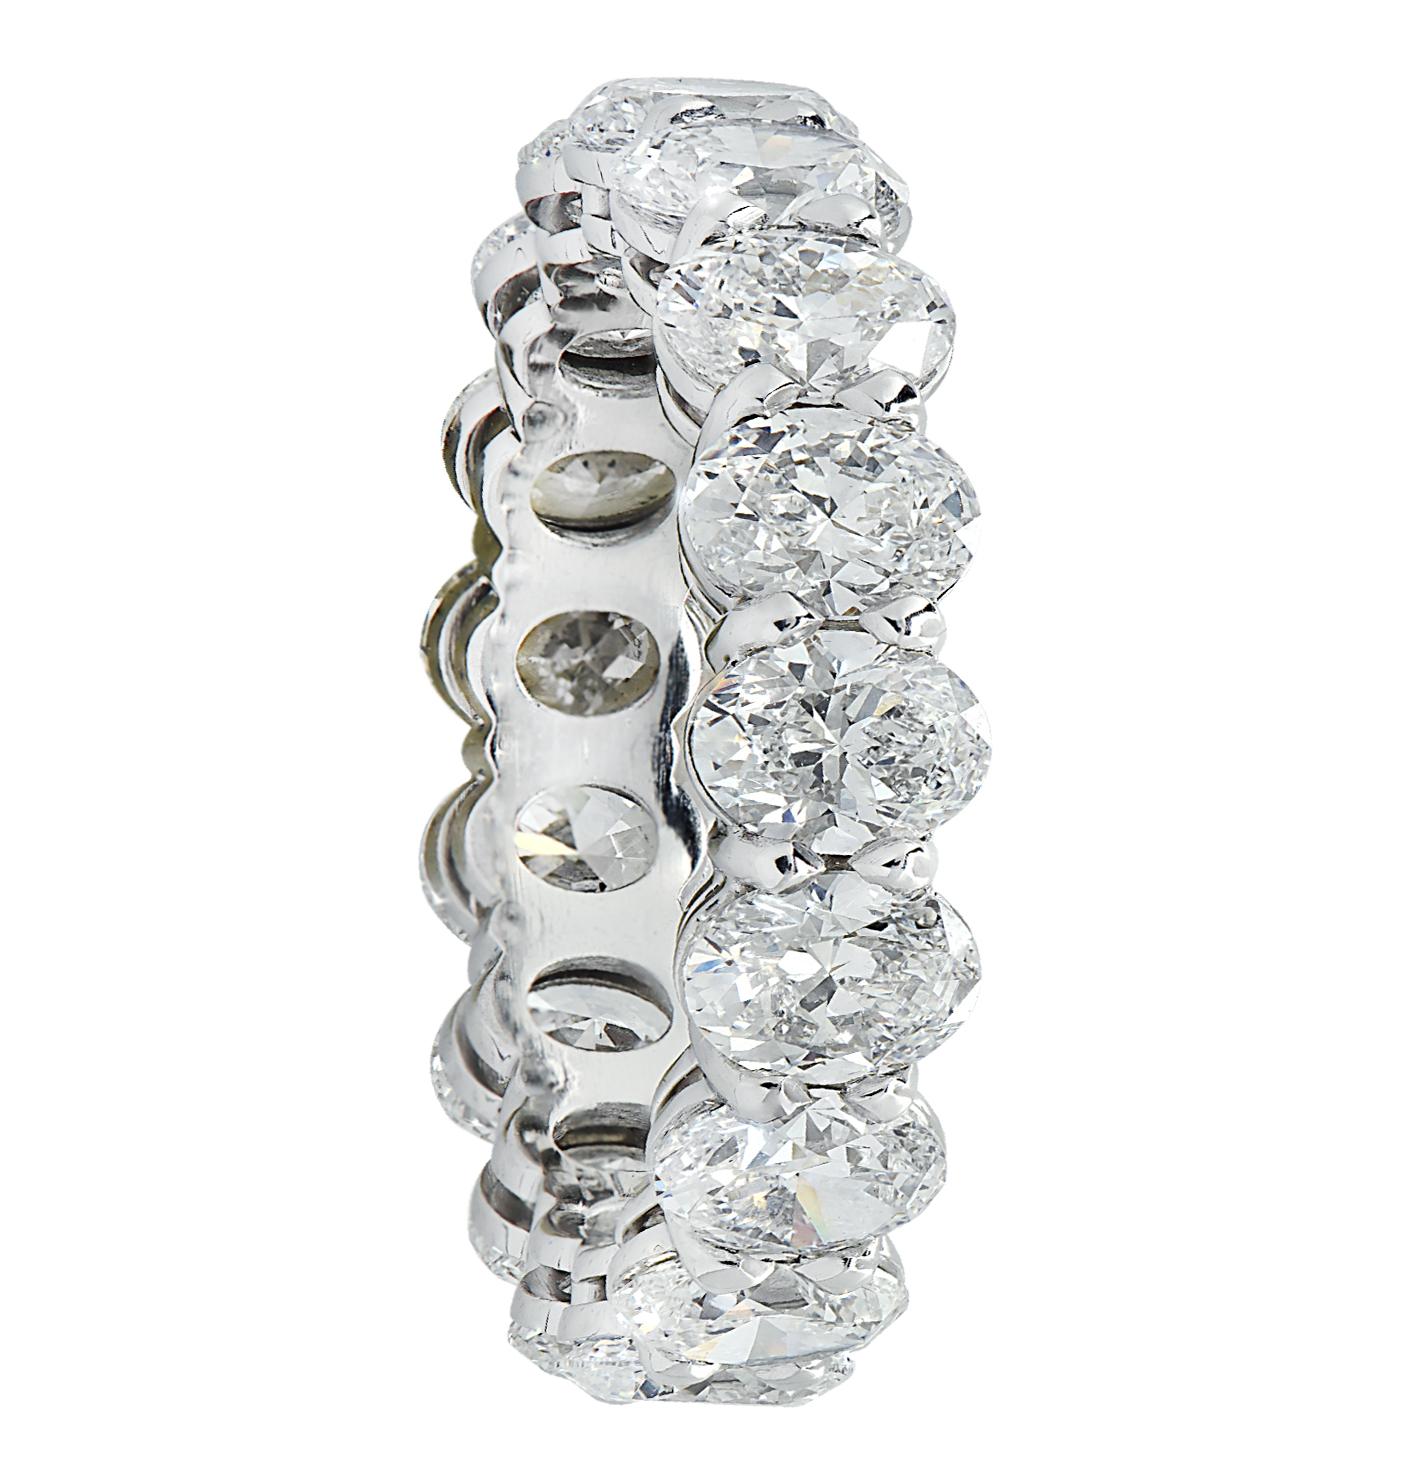 Exquisites Vivid Diamonds Ewigkeitsarmband aus Platin mit 17 atemberaubenden ovalen Diamanten mit einem Gesamtgewicht von 5,10 Karat, Farbe F-G, Reinheit VS1-VS2, von GIA zertifiziert. Jeder Diamant wurde sorgfältig ausgewählt, perfekt aufeinander